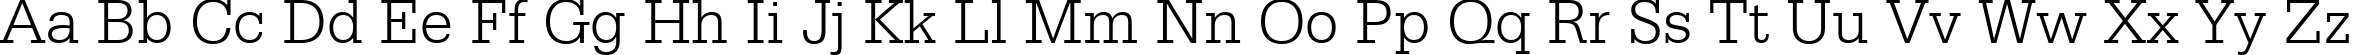 Пример написания английского алфавита шрифтом Serifa Light BT